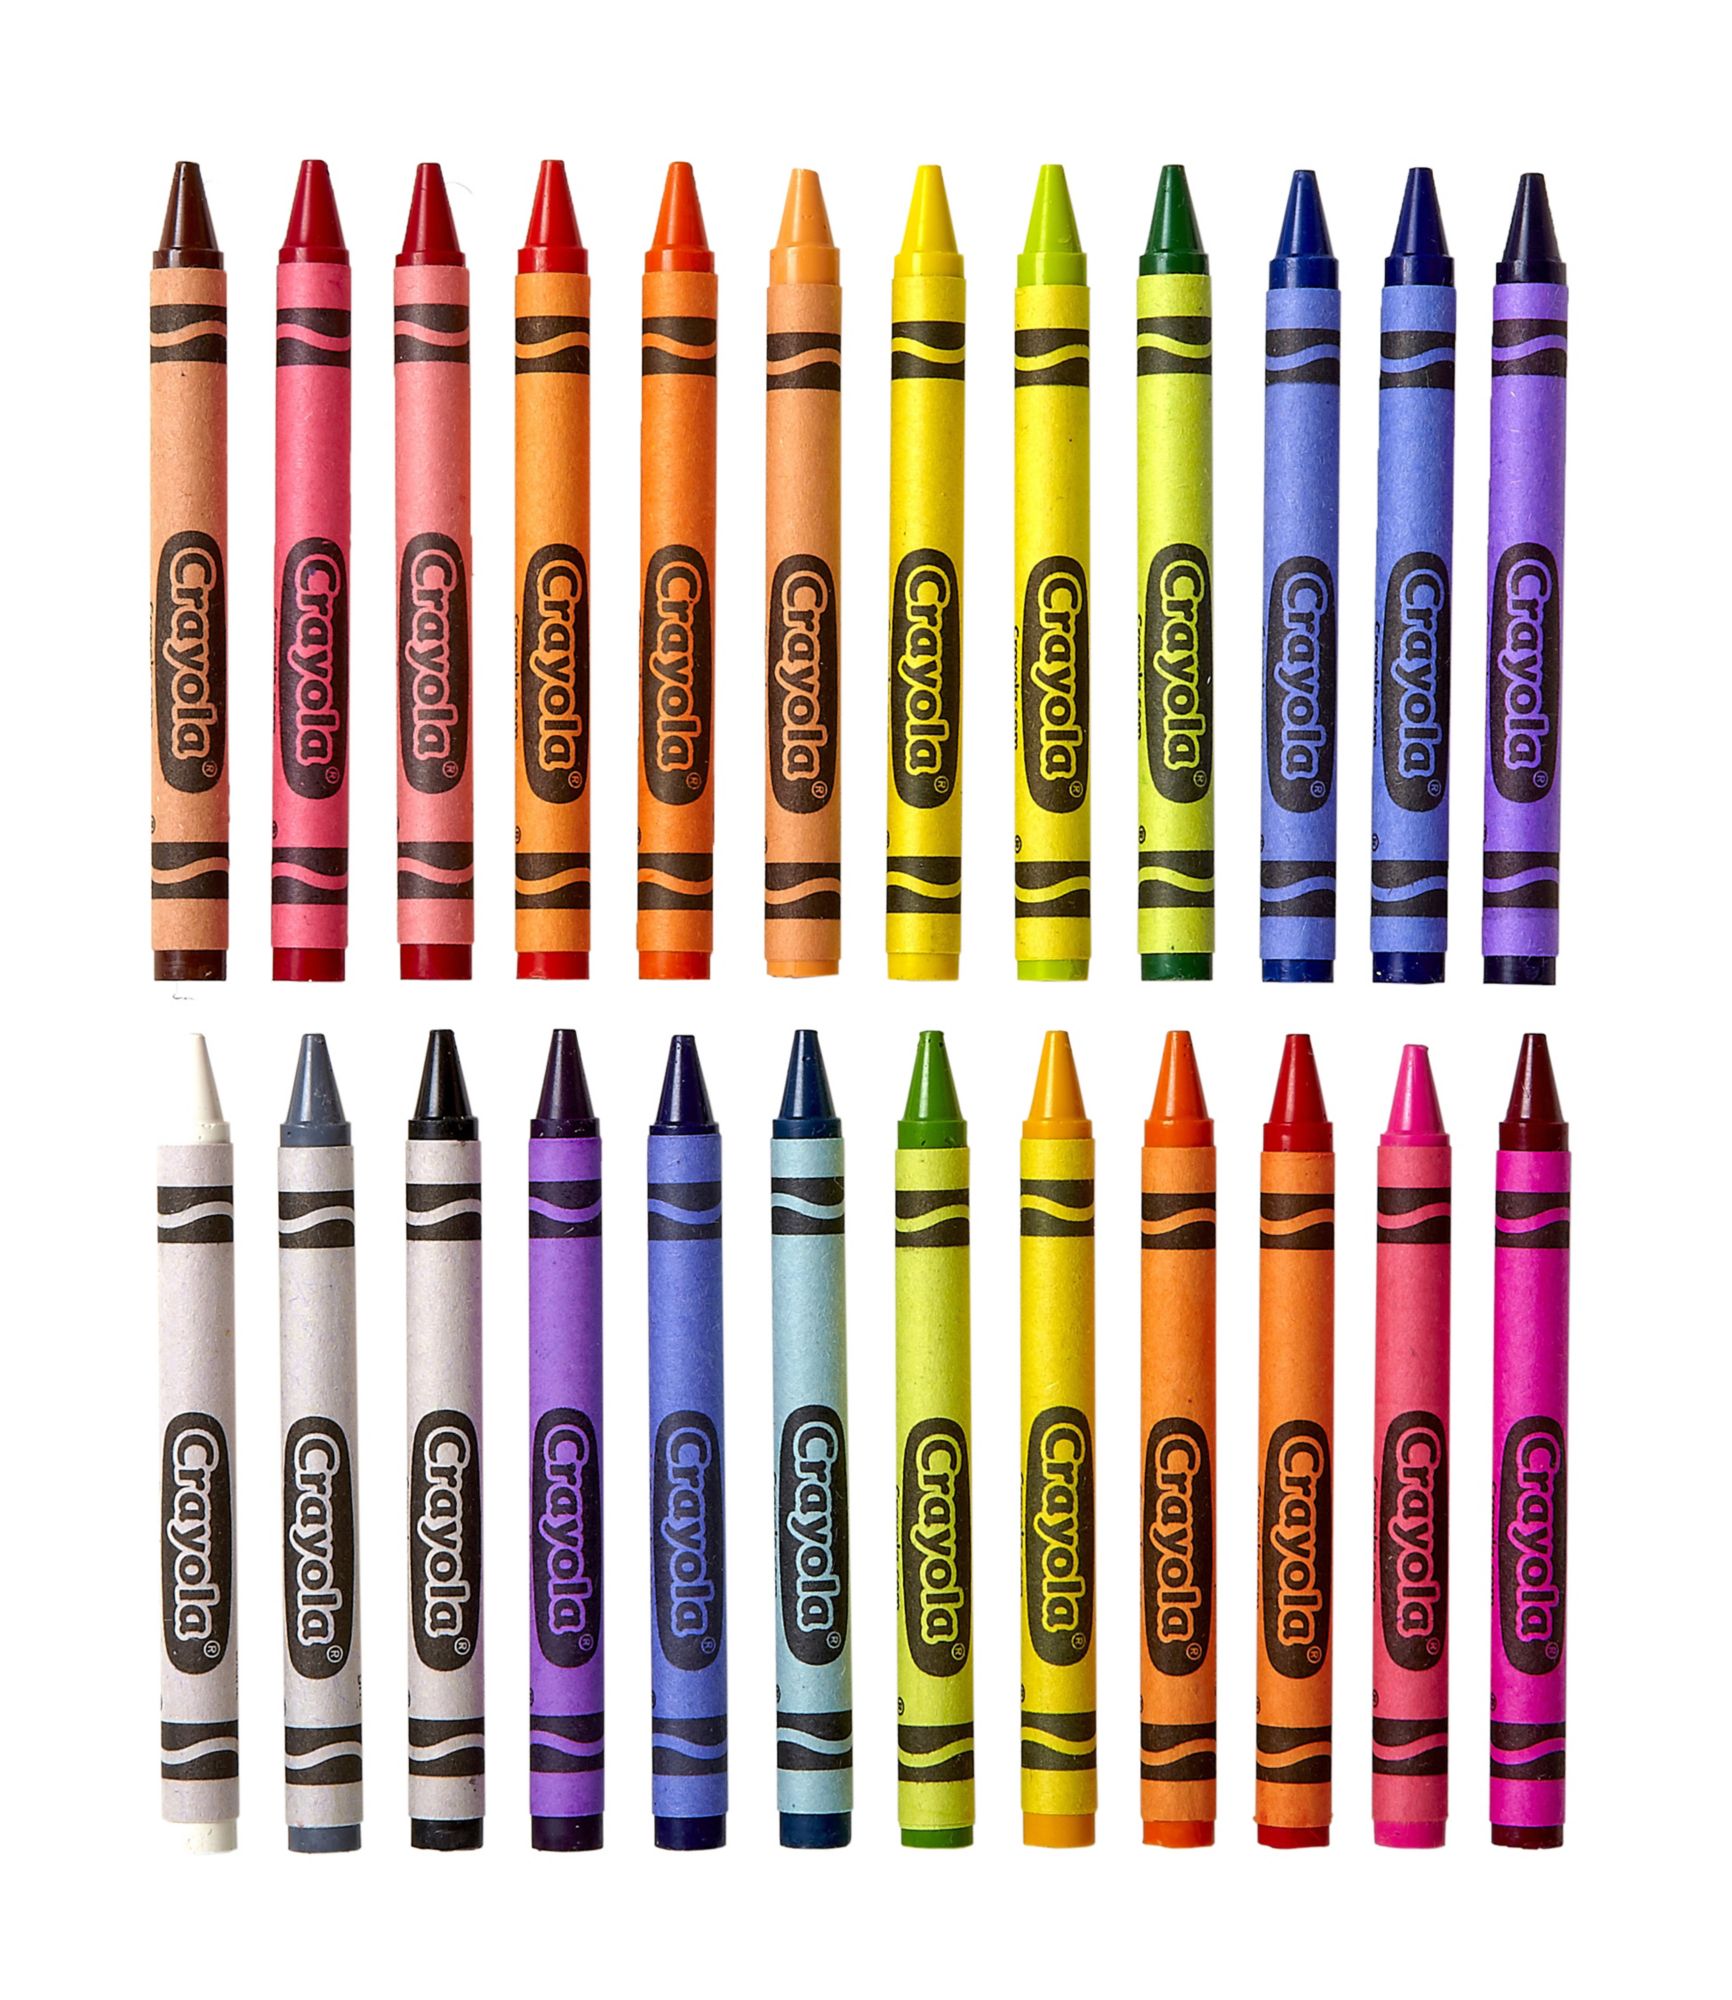 4 Color Crayon Sets by Windy City Novelties